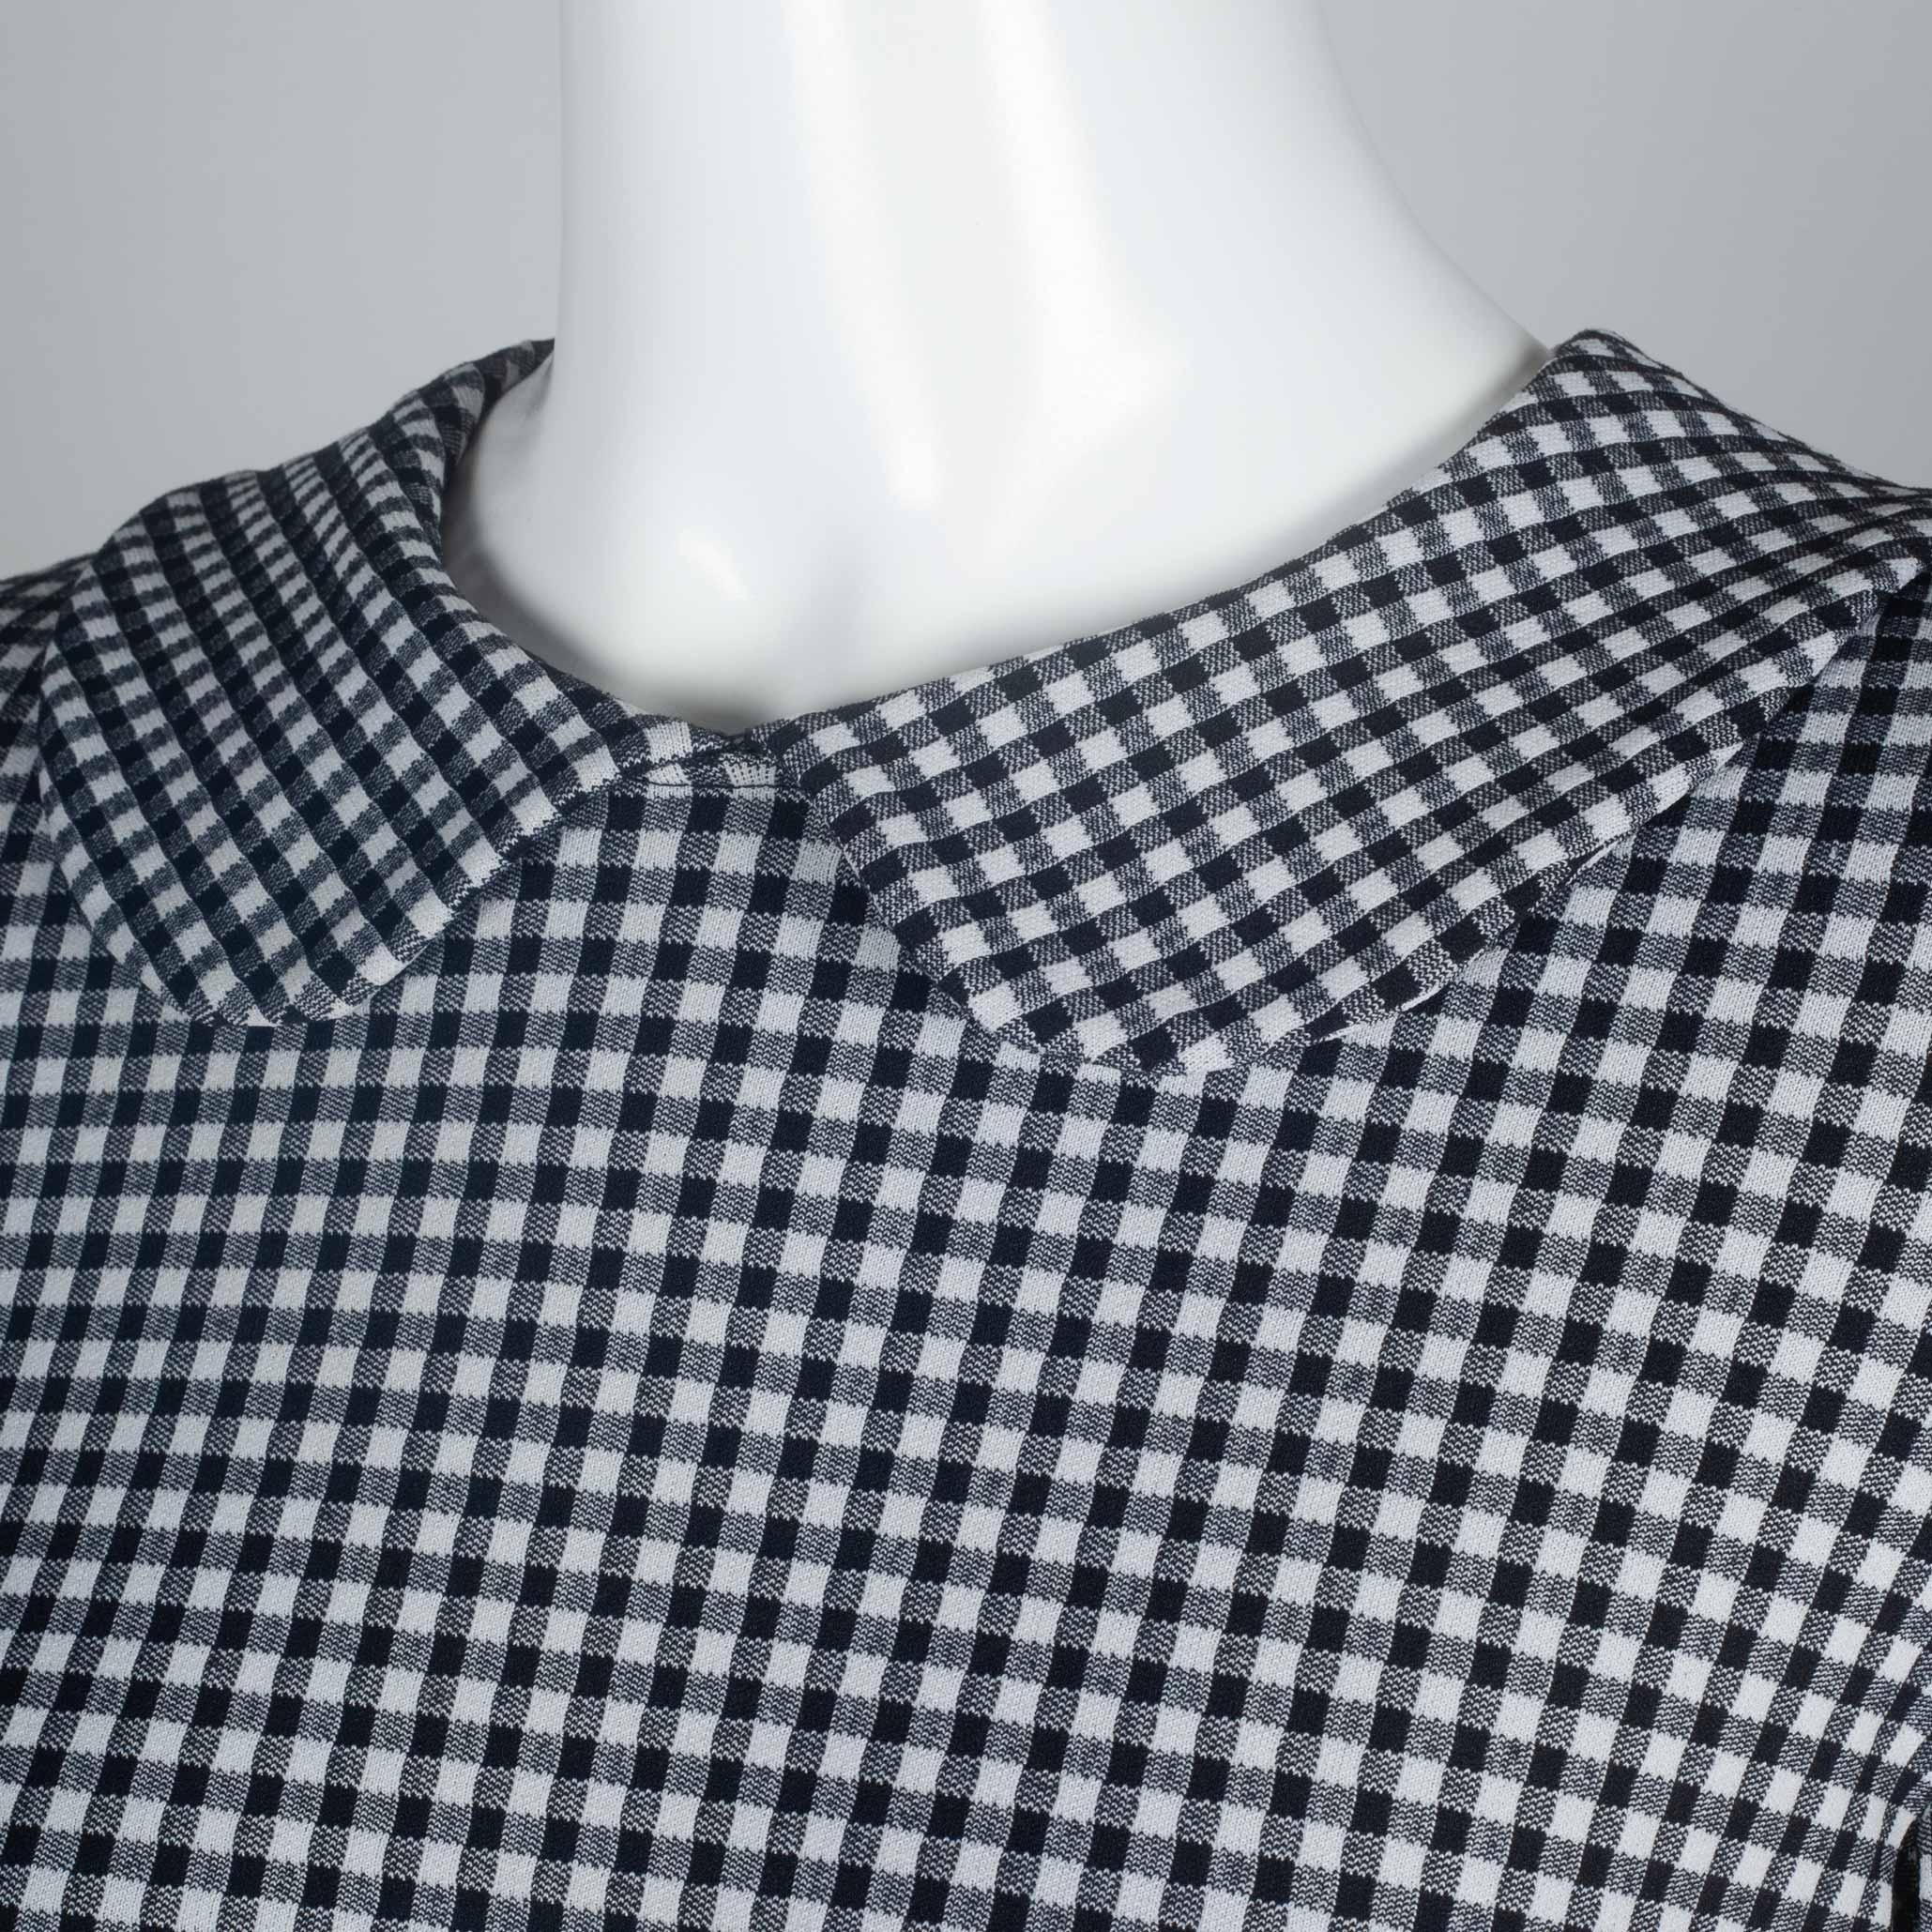  Comme des Garçons Checkered T-Shirt with Collar, 1996 1